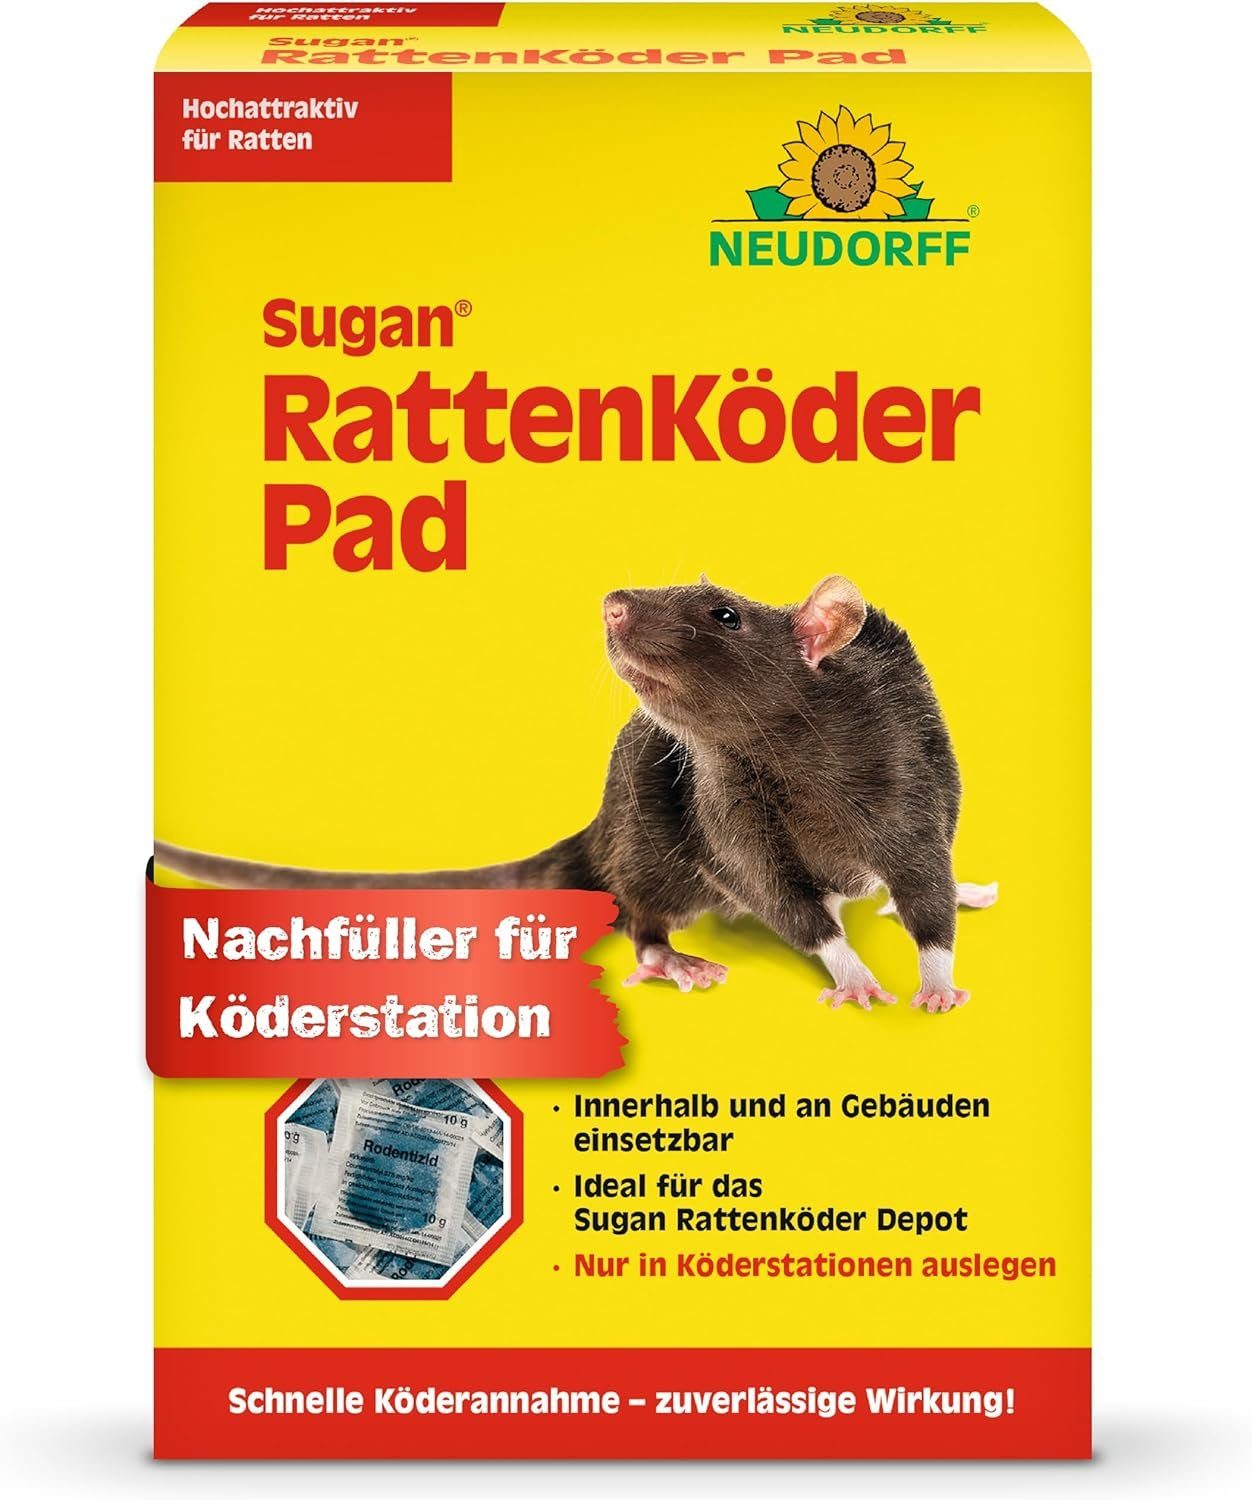 Neudorff Gift-Rattenköder Sugan, 400 g, Ratten effektiv und sicher bekämpfen